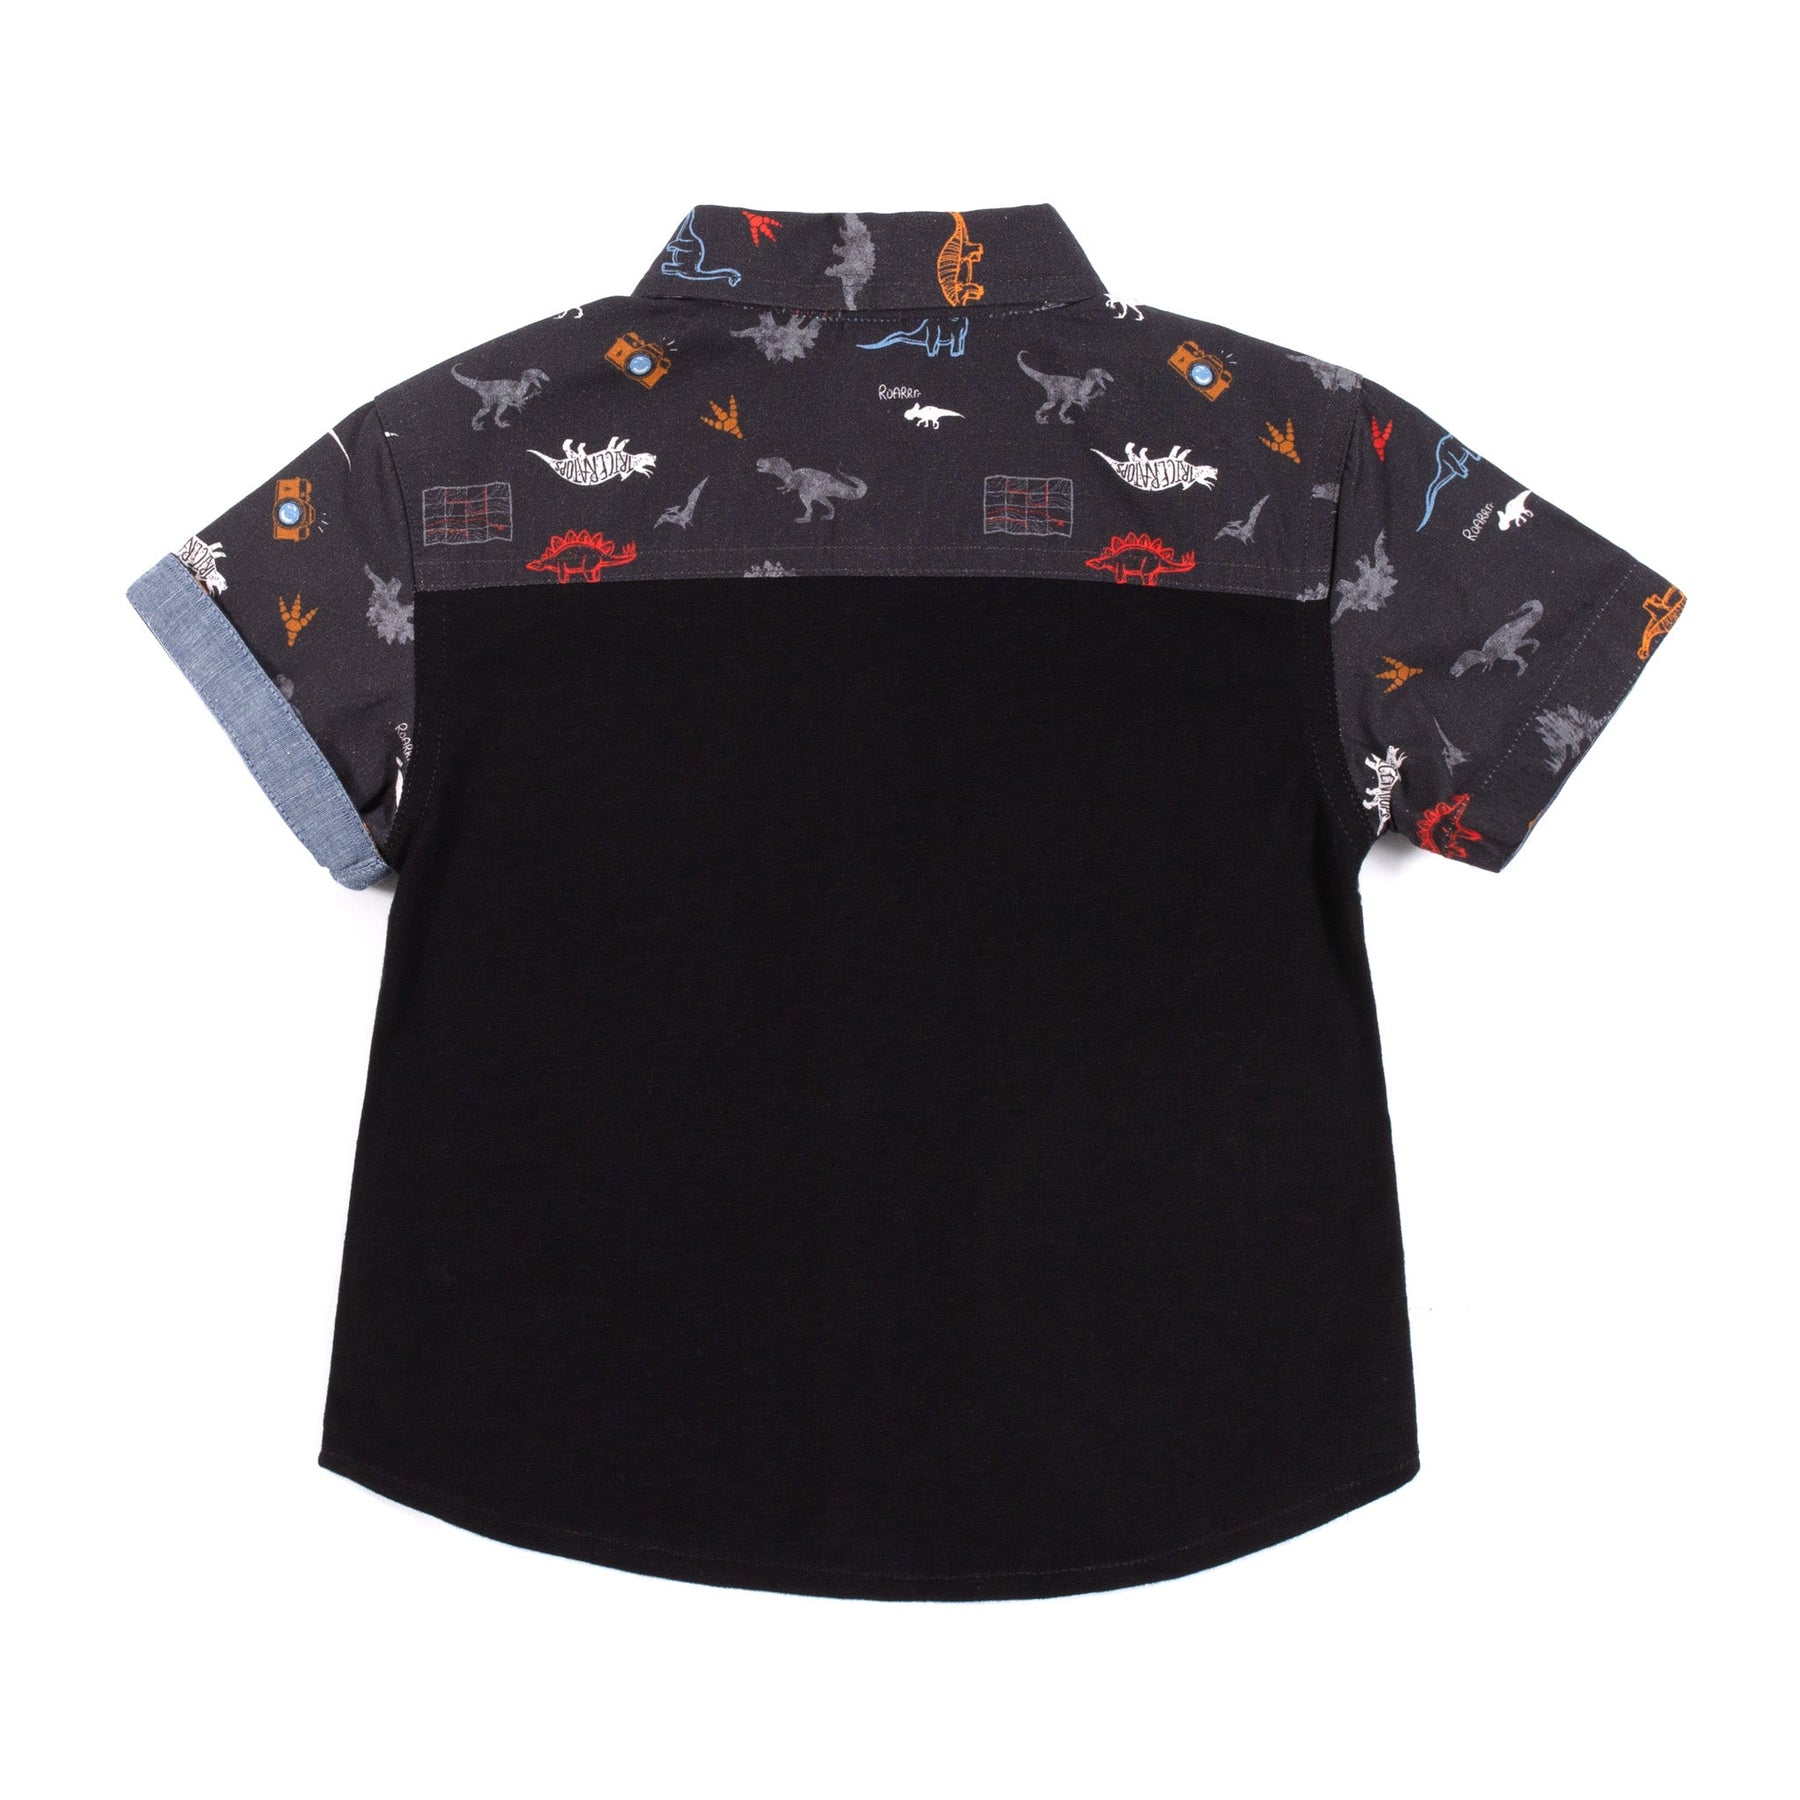 Chemise manches courtes pour bébé garçon par Nano | S2355-10 Charcoal | Boutique Flos, vêtements mode pour bébés et enfants